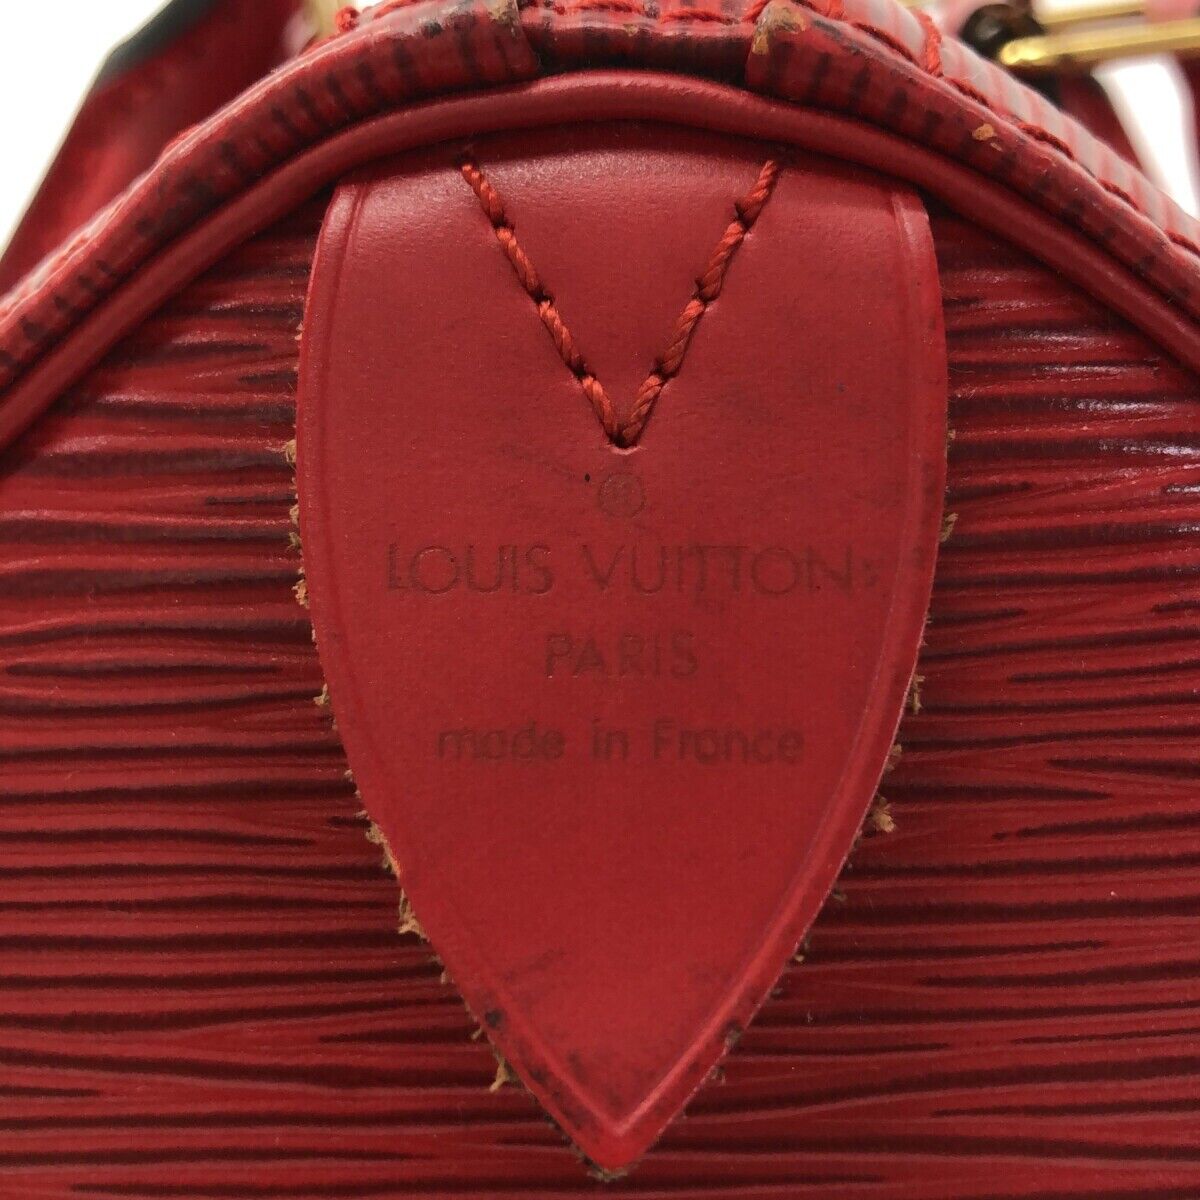 Louis Vuitton Red Epi Leather Speedy 30 Louis Vuitton